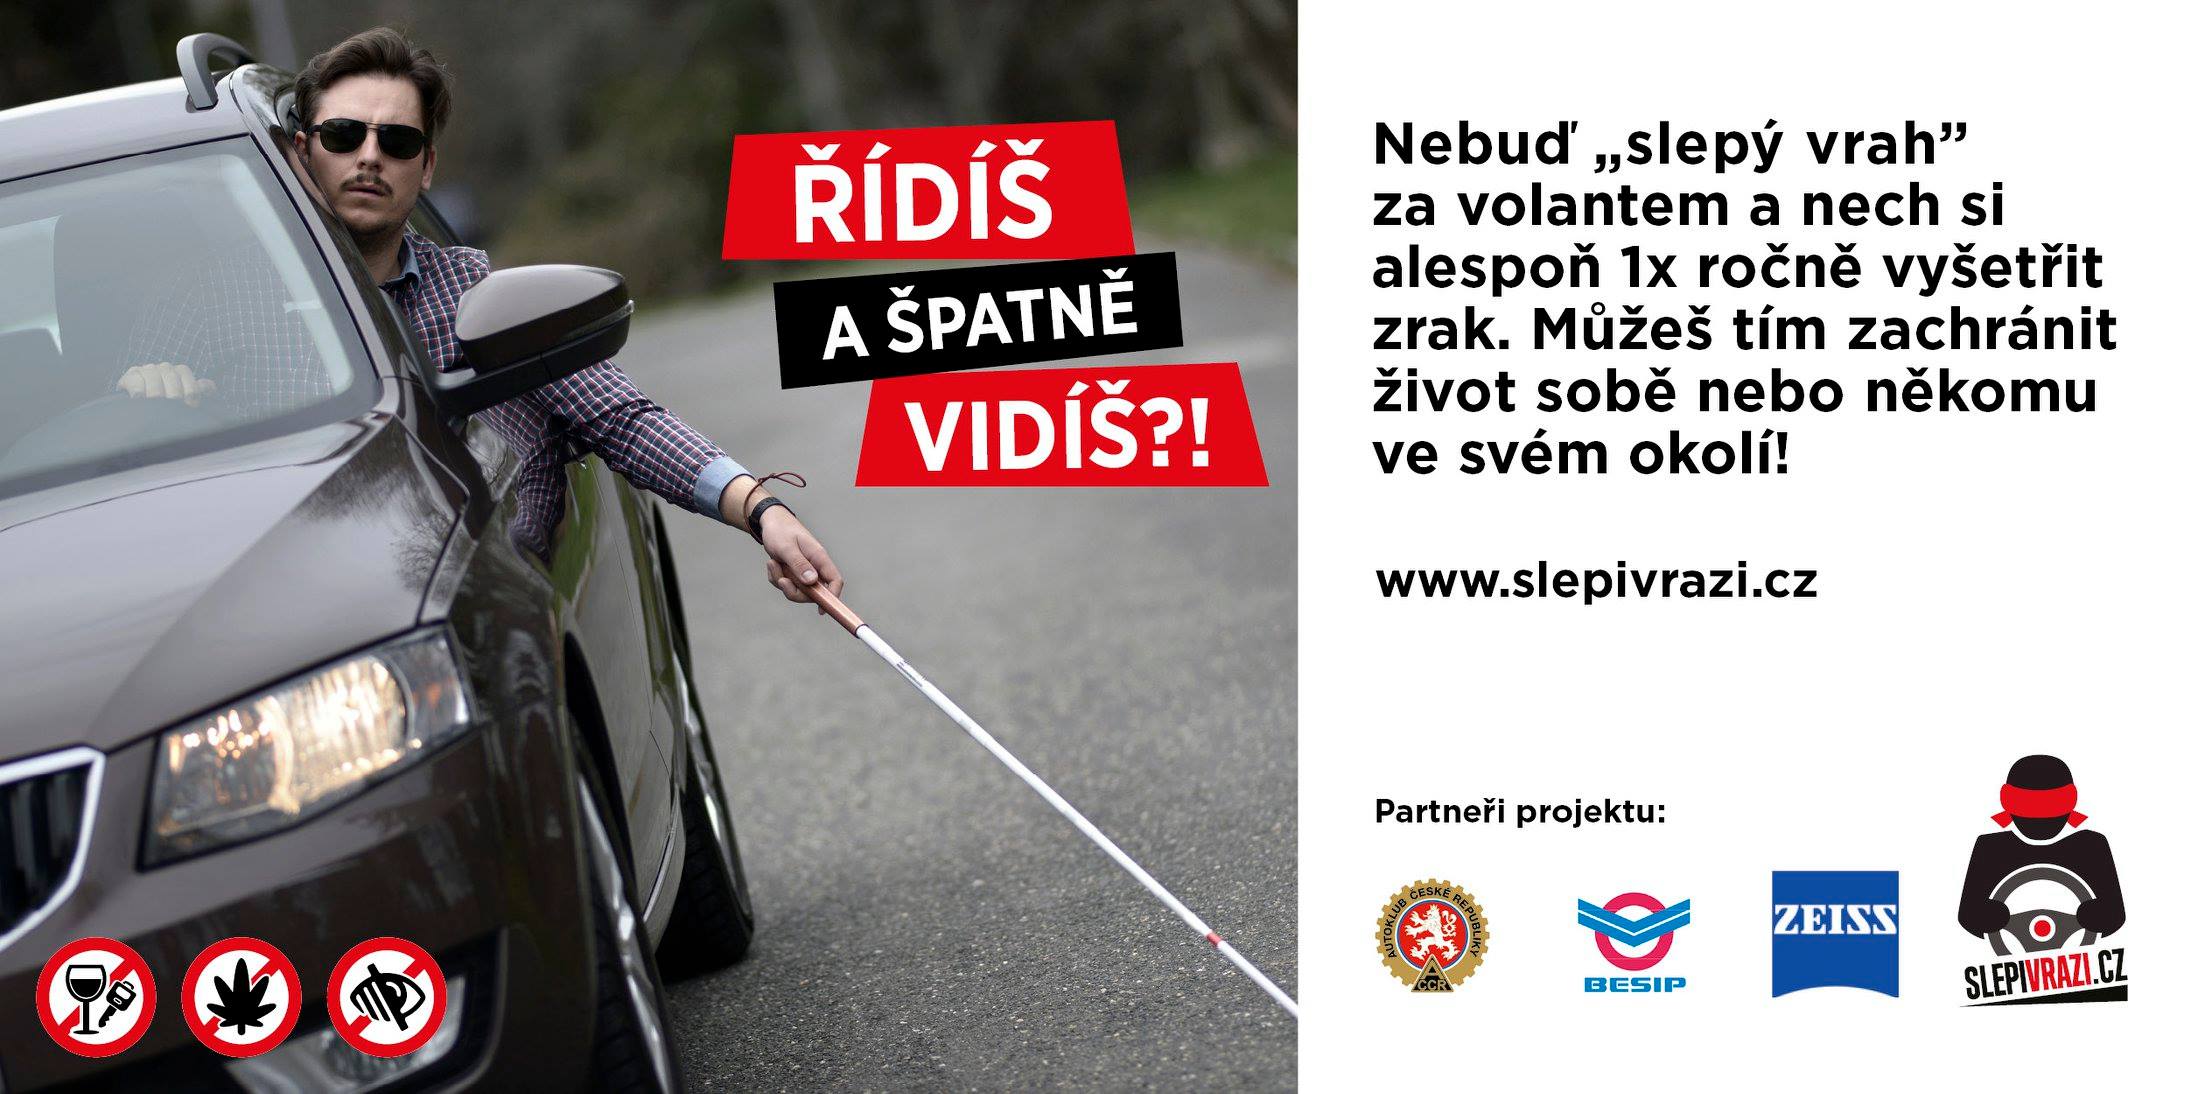 Reklamní plakát ke kampani Slepí vrazi. Foto: Slepivrazi.cz